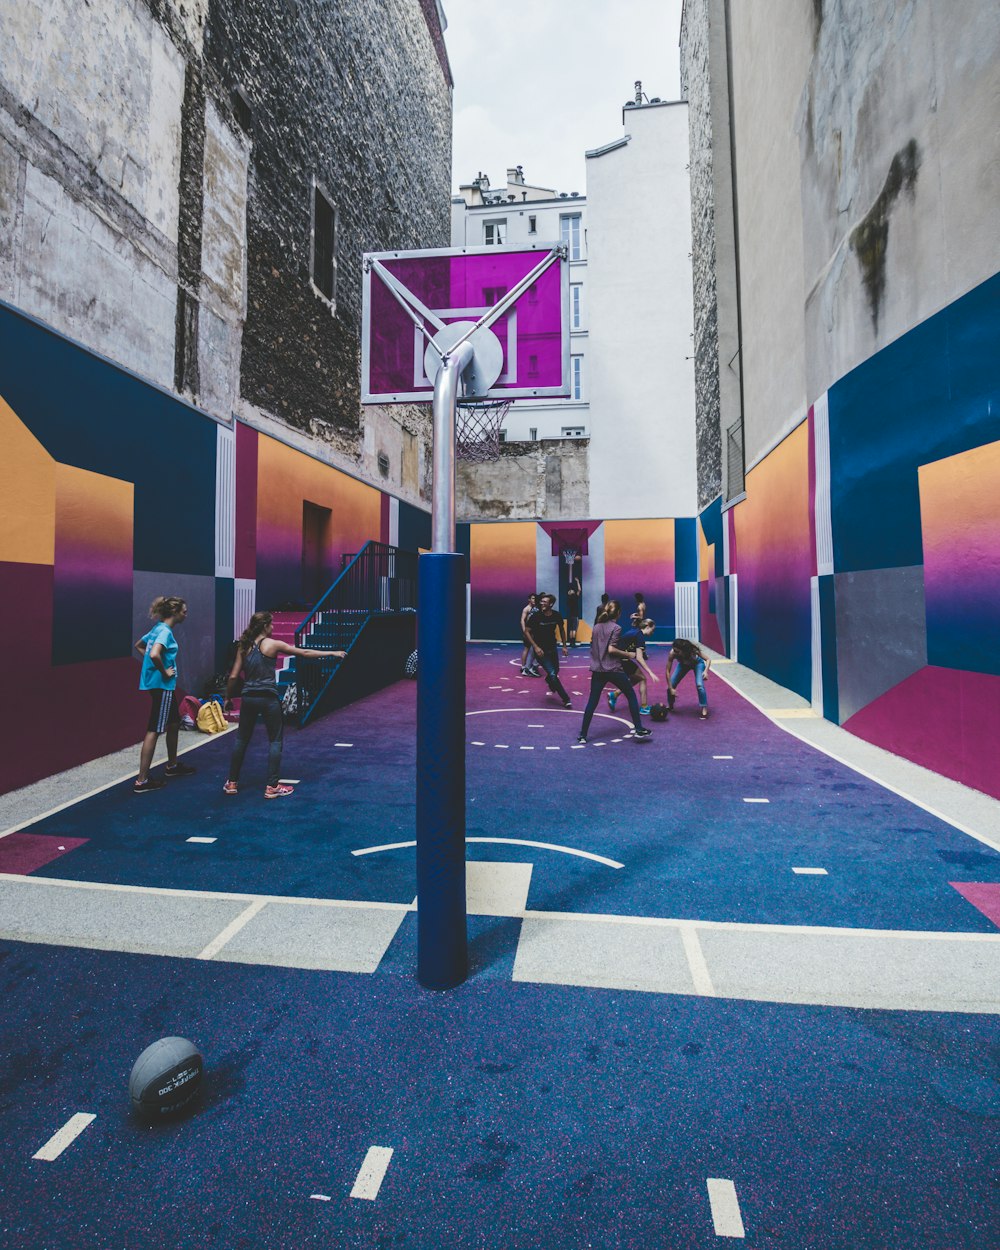 Grupo de hombres jugando baloncesto en el callejón